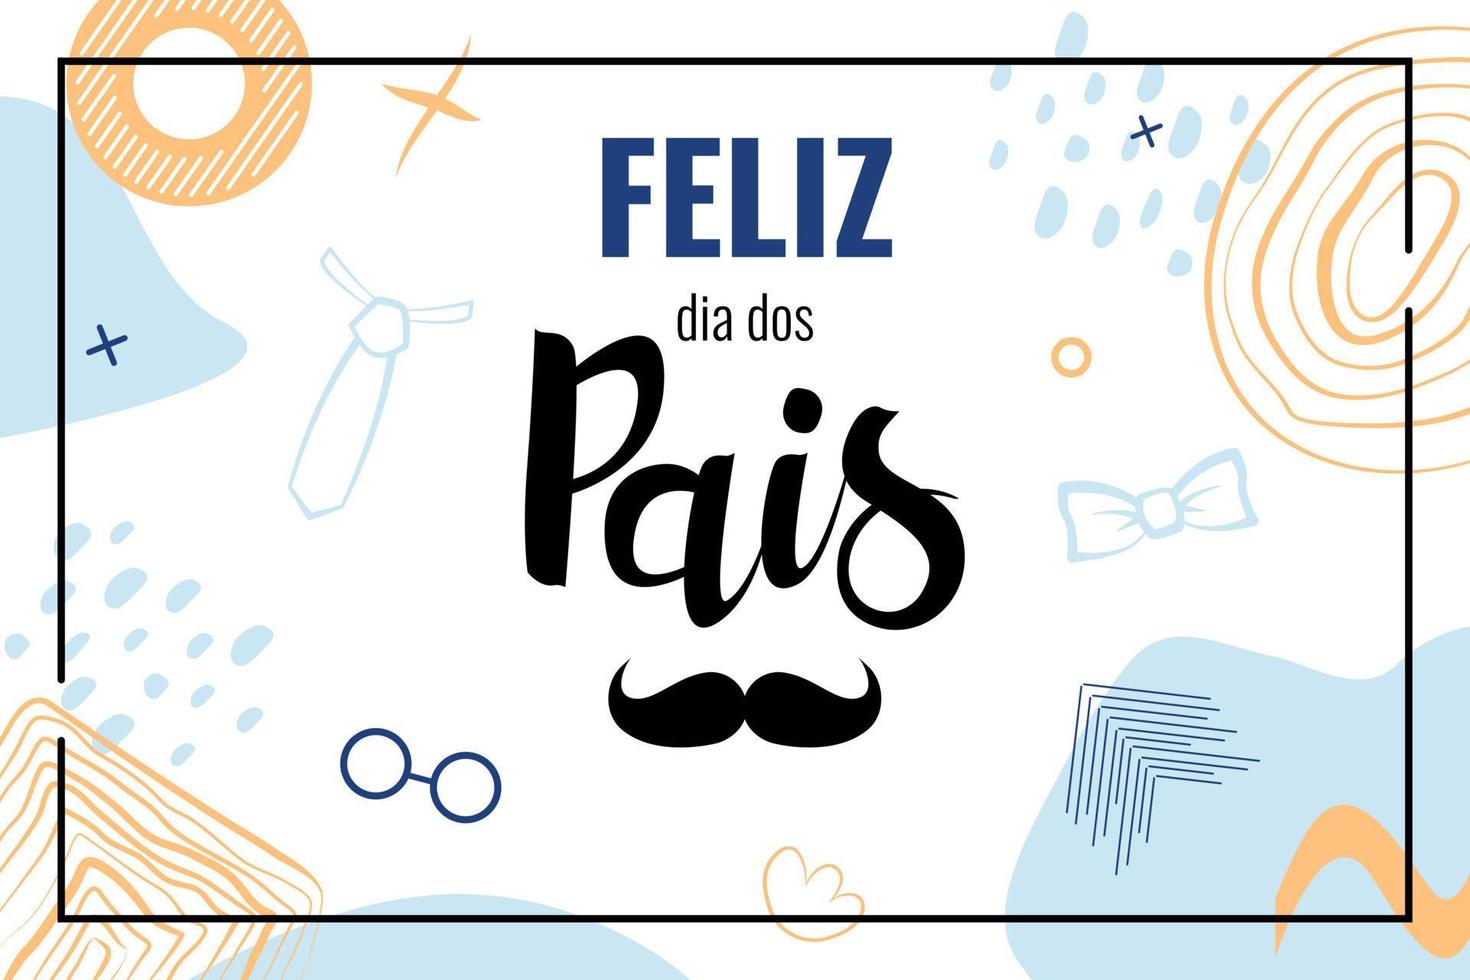 feliz dia dos pais bedeutet in brasilien glücklicher vatertag. Banner mit Schriftzug in portugiesischer Sprache mit Schnurrbart. Vektor